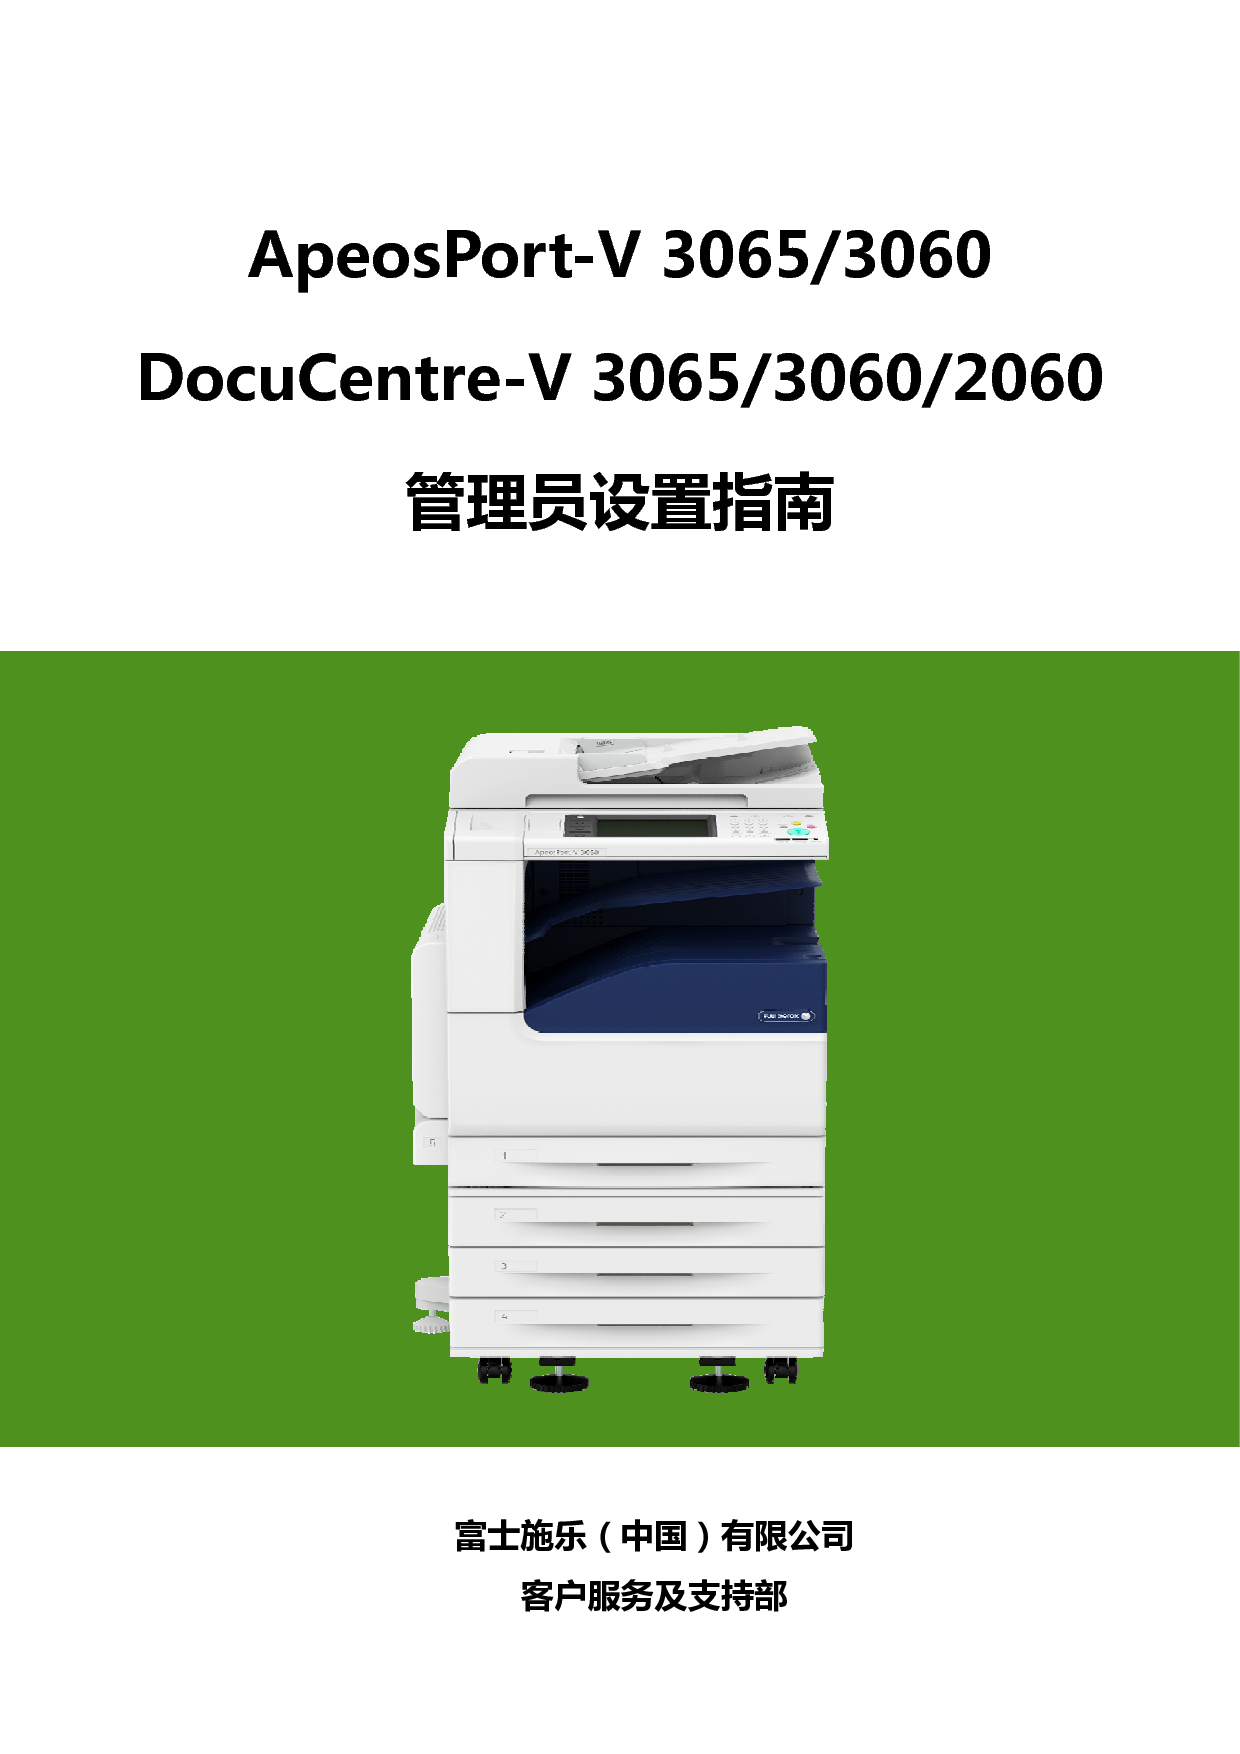 富士施乐 Fuji Xerox ApeosPort-V 3060, DocuCentre-V 2060 使用说明书 封面